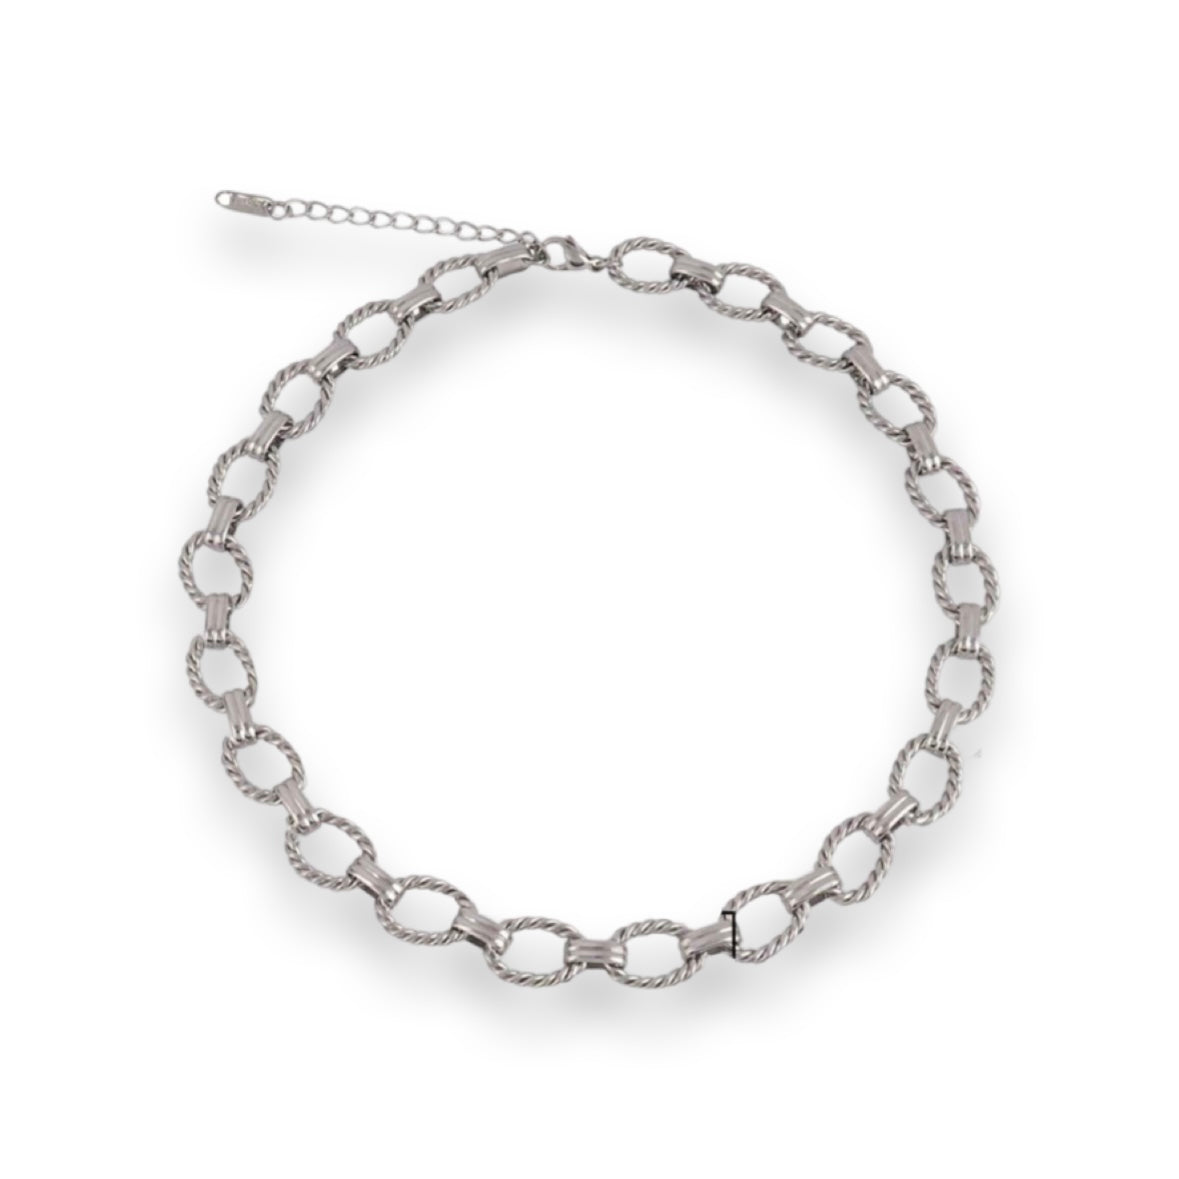 No.7 Silver Necklace